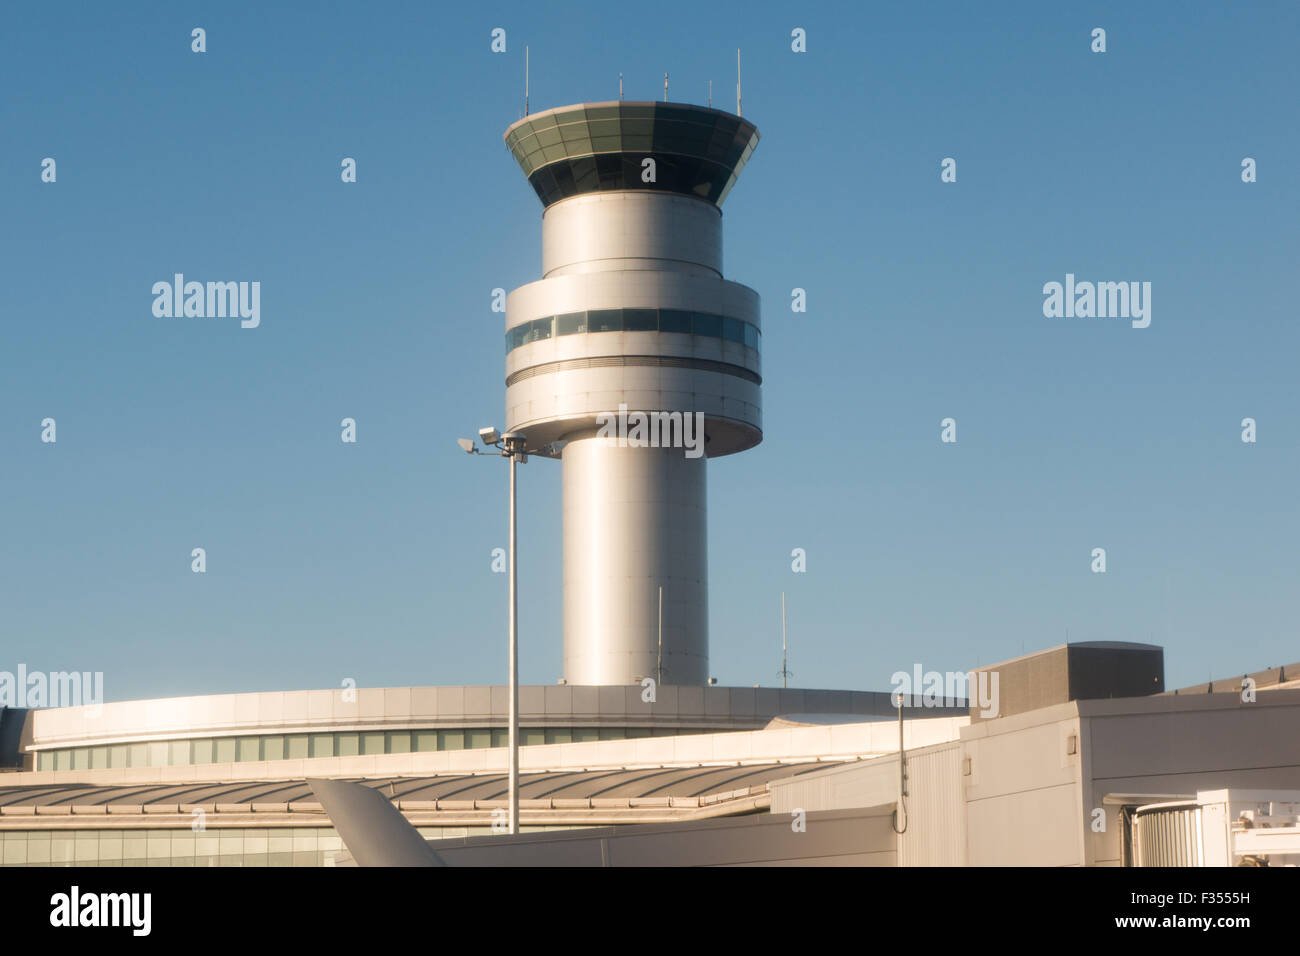 Tour de contrôle de la circulation aérienne Banque D'Images